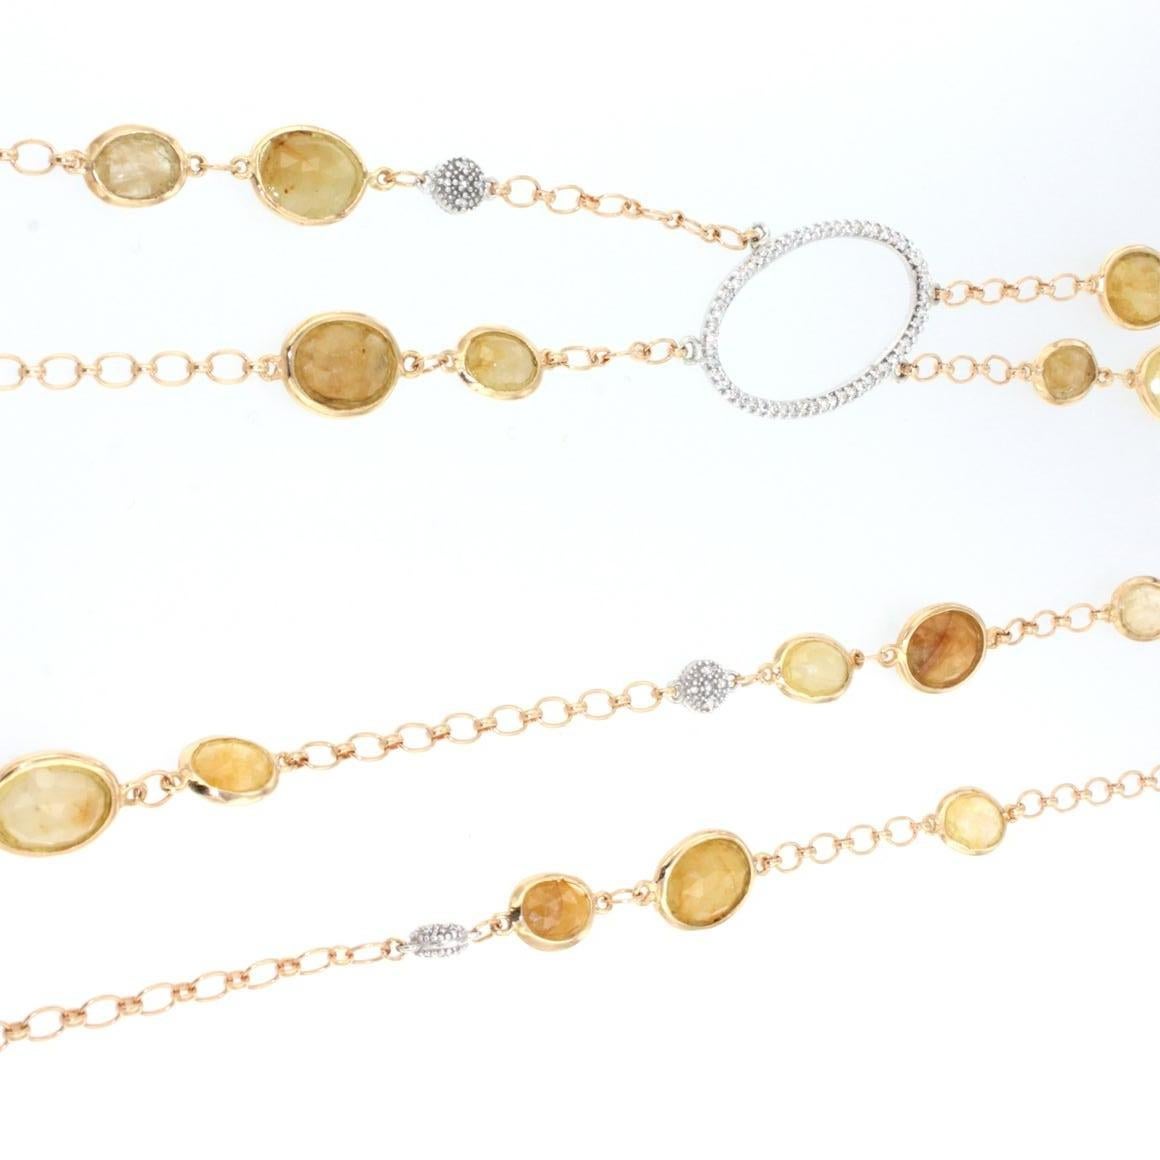 Wunderschöne lange Halskette  , intensiv gelber Saphir, sehr schönes und besonderes Design . Hergestellt in Italien von Stanoppi Jewellery seit 1948.

Lange Halskette  aus 18k Roségold mit gelbem Saphir (Ovalschliff, Größe: 8x12 mm)  ) und weiße